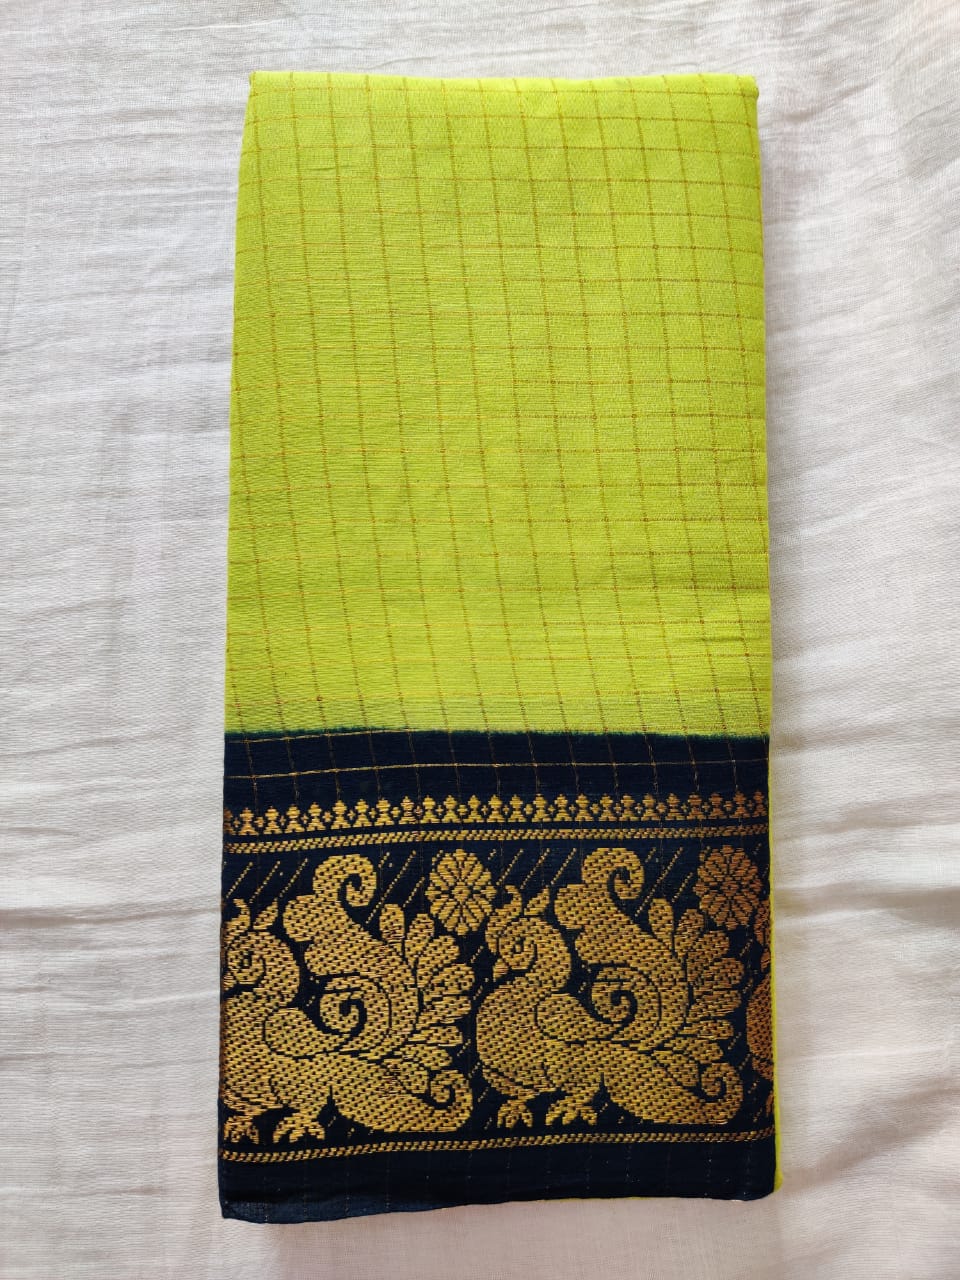 Yellow With Black Border Madurai Sungudi Saree- Double Side Jari Border Jari Check